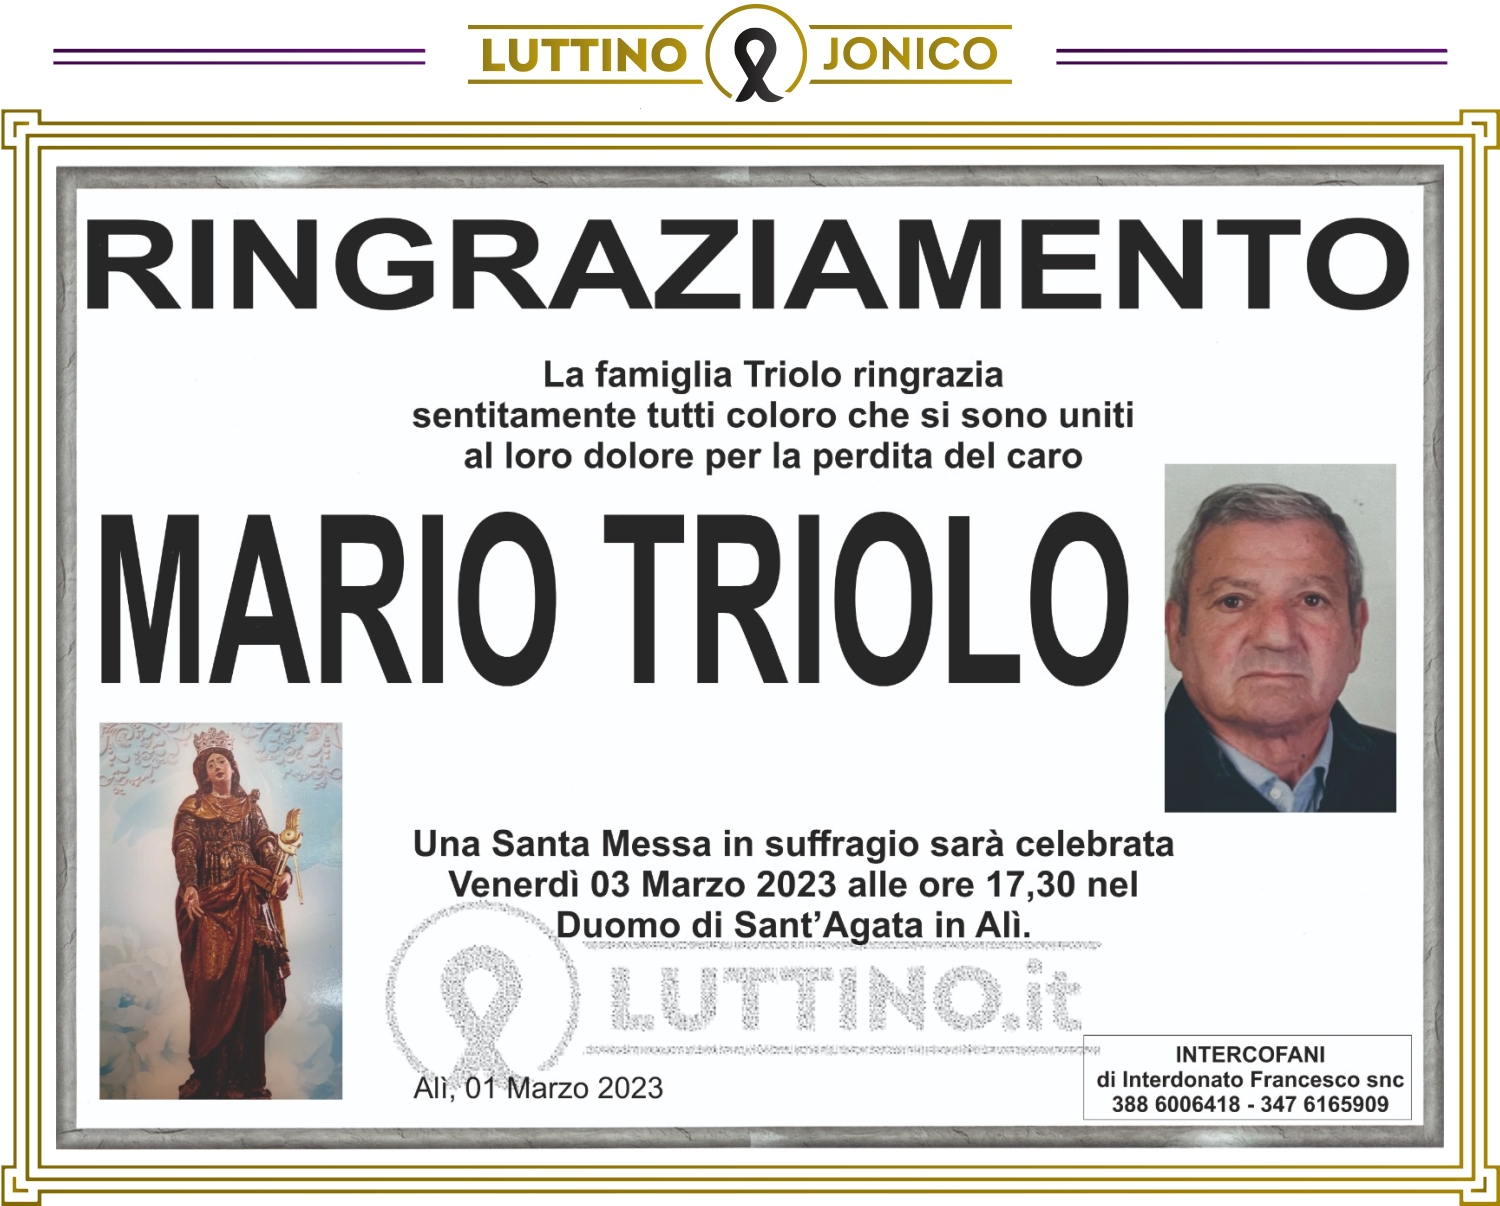 Mario Triolo